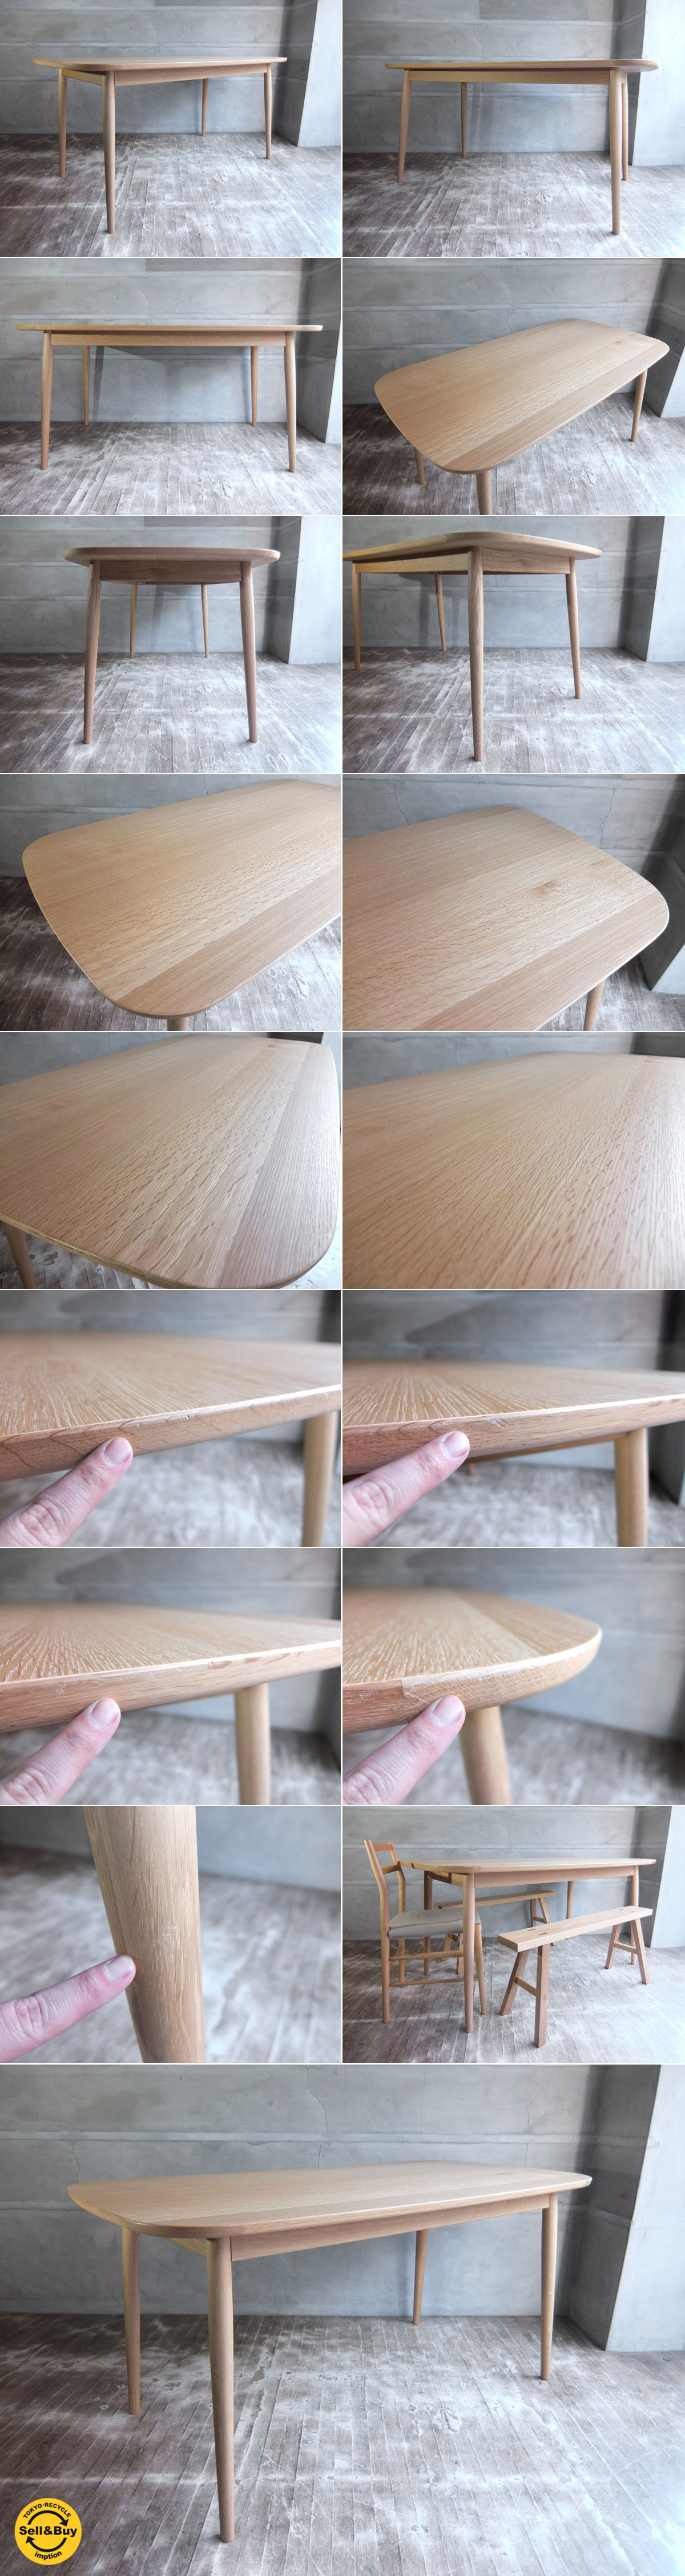 無印良品 MUJI オーク材 ダイニングテーブル 丸脚 幅150cm 定価98000円 